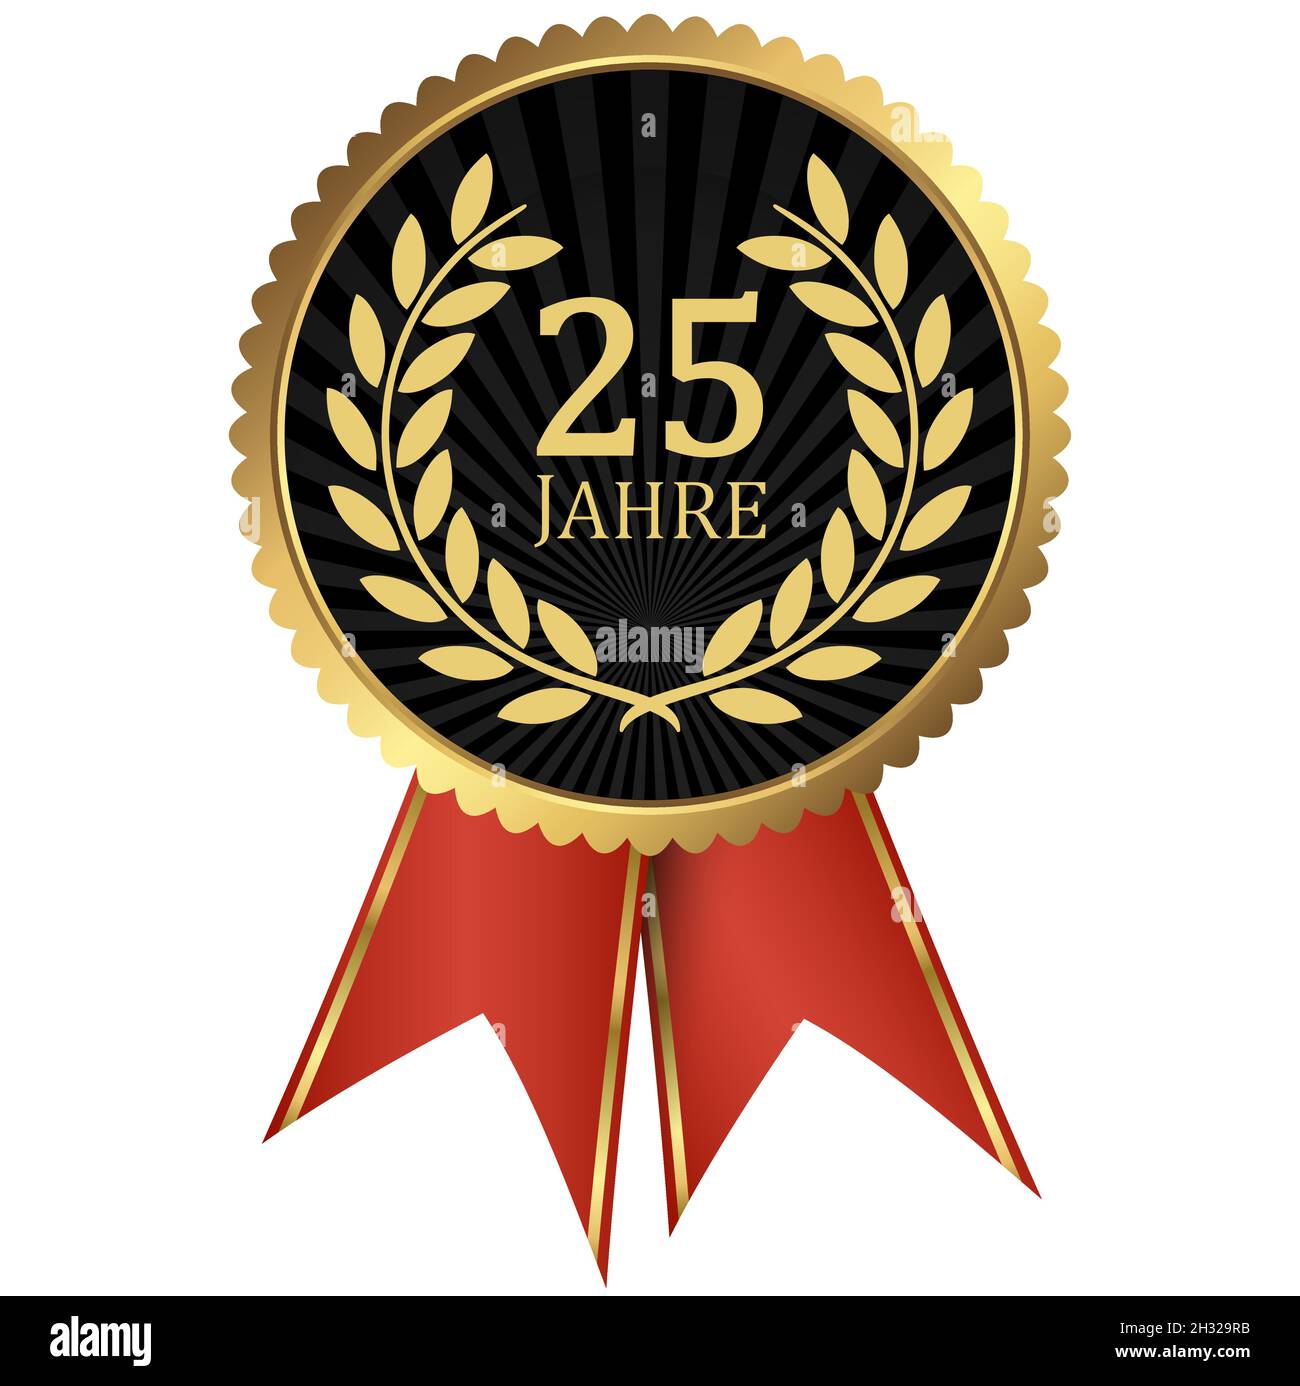 fichier vectoriel eps avec médaillon d'or avec couronne de laurier pour le succès ou jubilé ferme et texte 25 ans (texte allemand) Illustration de Vecteur